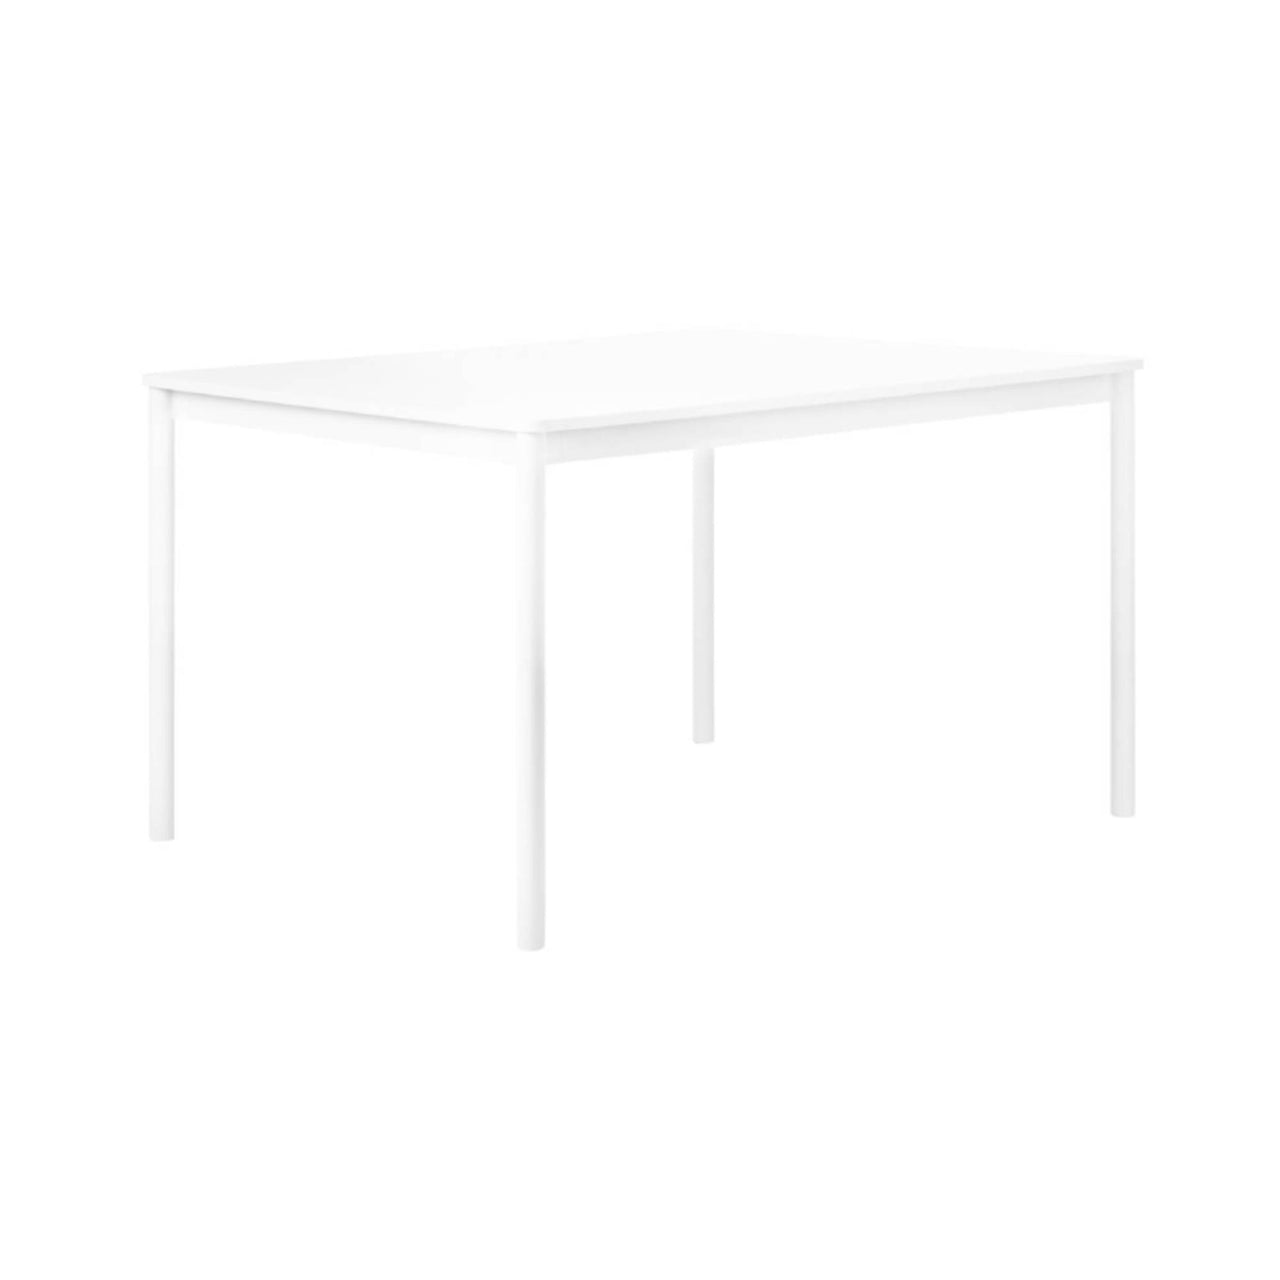 Base Table: Small + White Laminate + ABS Edge + White